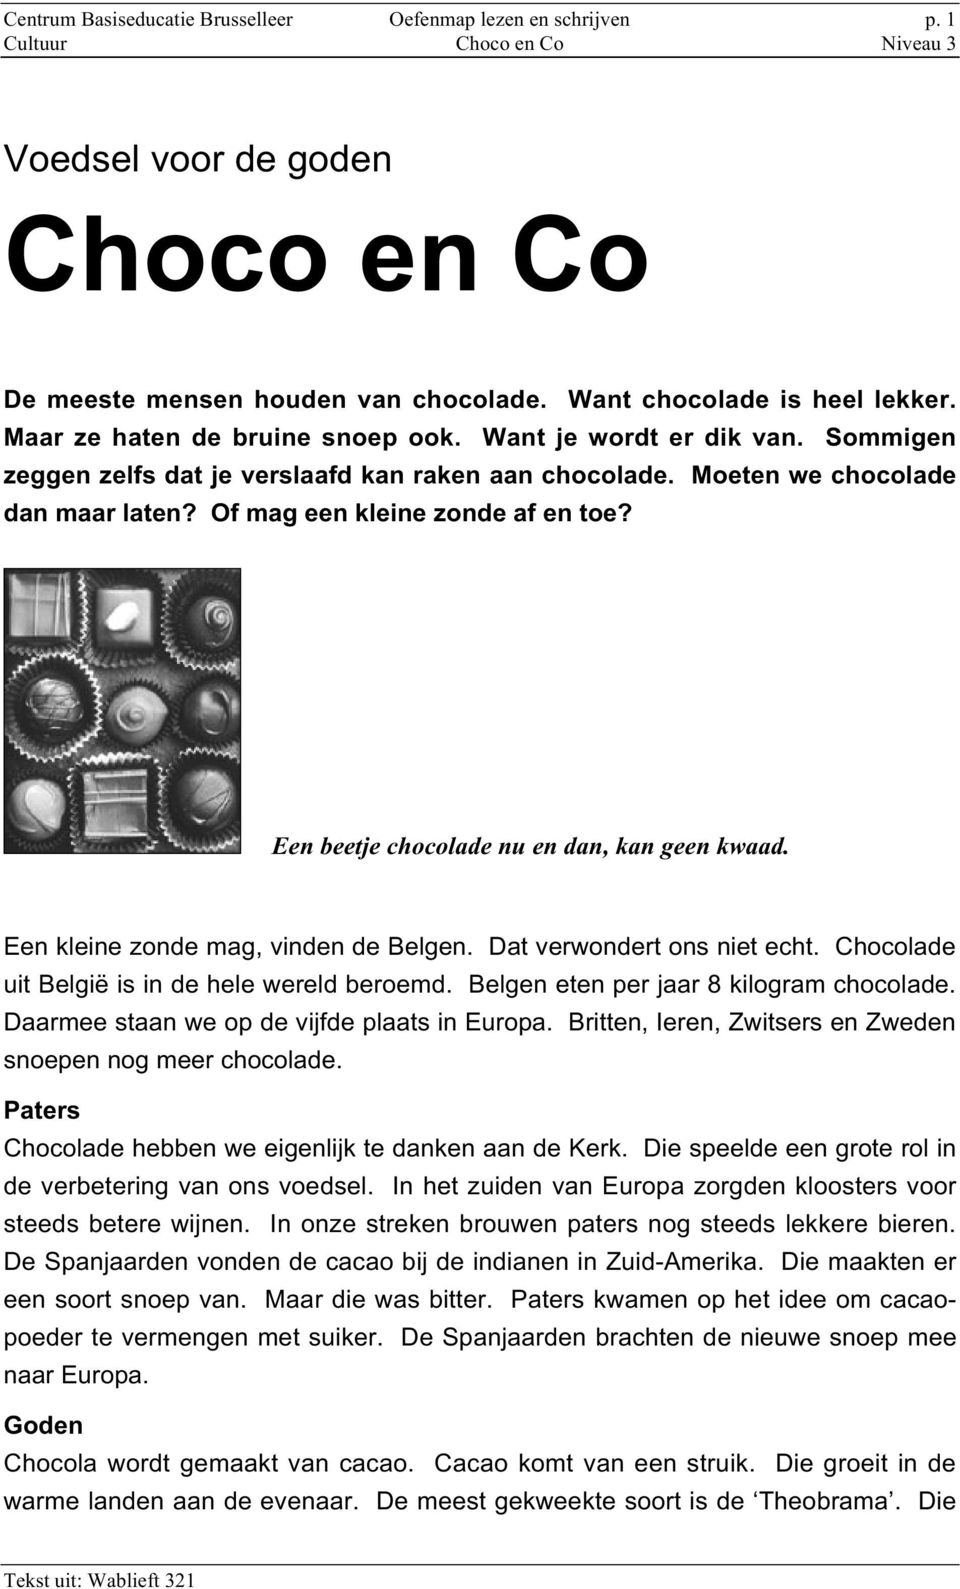 Een beetje chocolade nu en dan, kan geen kwaad. Een kleine zonde mag, vinden de Belgen. Dat verwondert ons niet echt. Chocolade uit België is in de hele wereld beroemd.